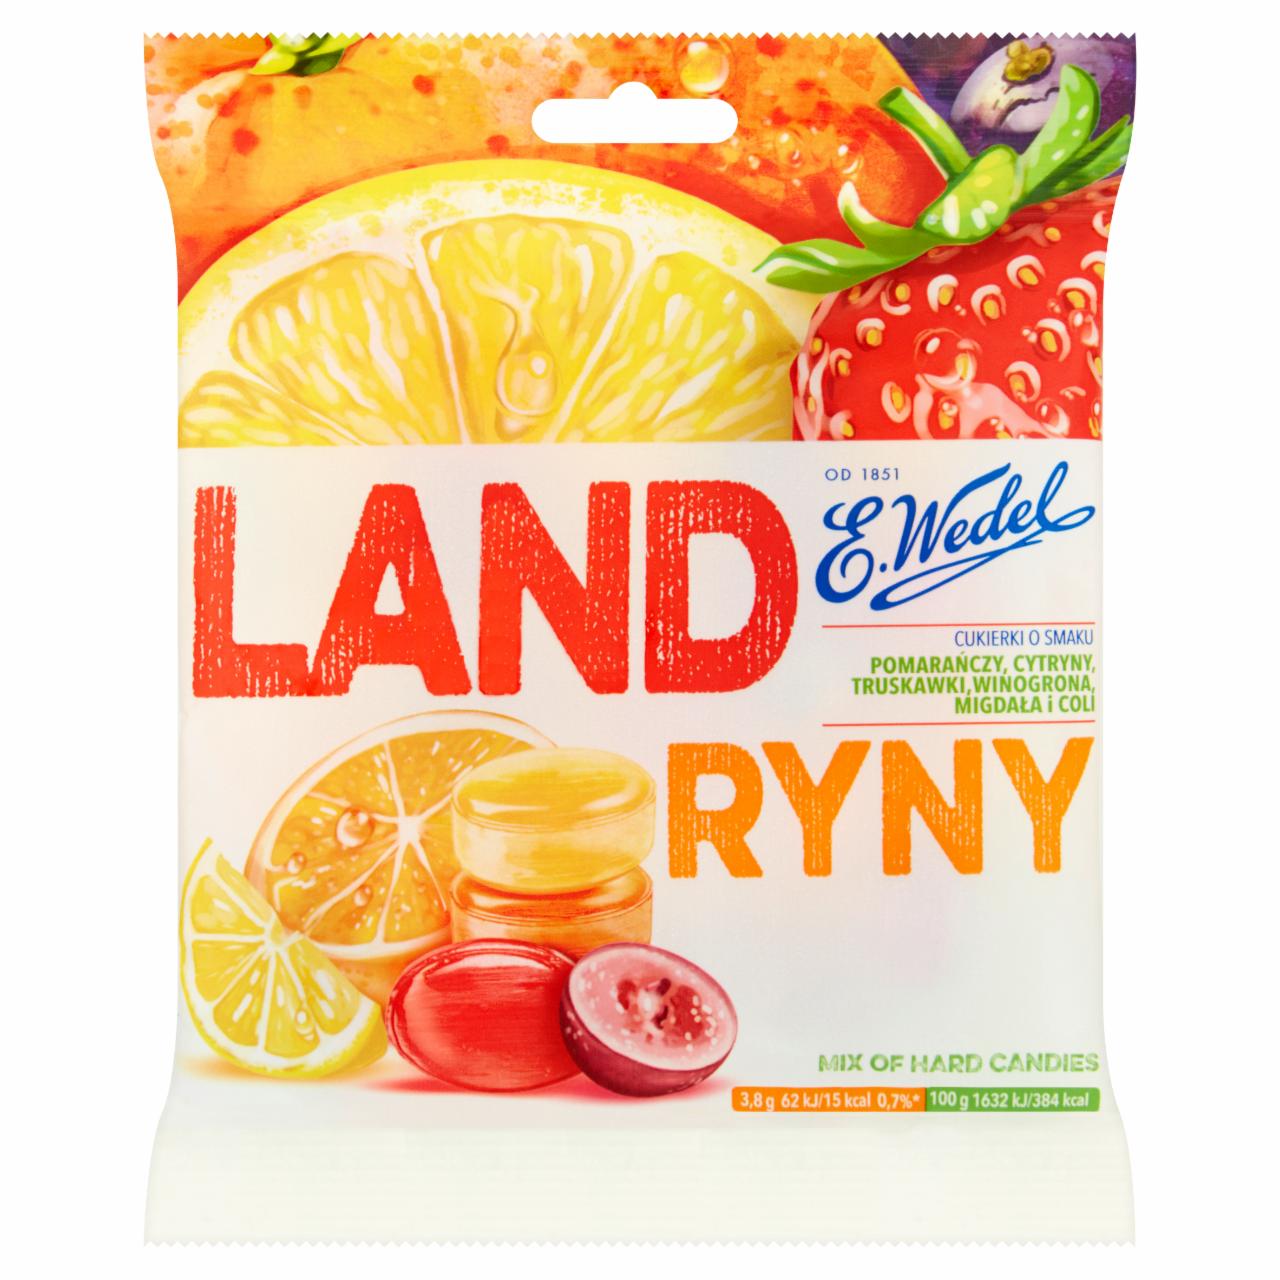 Zdjęcia - Landryny Cukierki o smaku pomarańczy cytryny truskawki winogrona migdała i coli 90 g E. Wedel